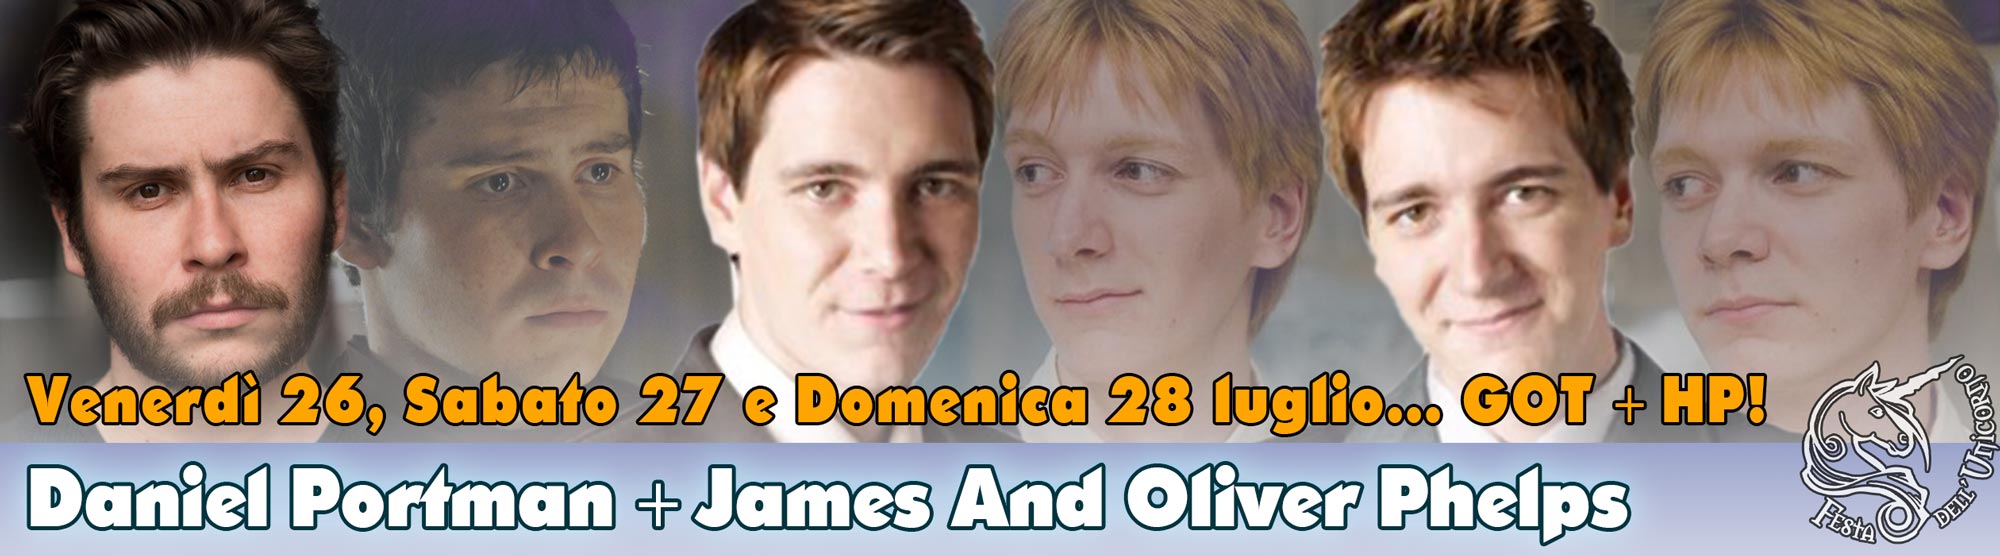 James and Oliver Phelps @ Festa dell'Unicorno